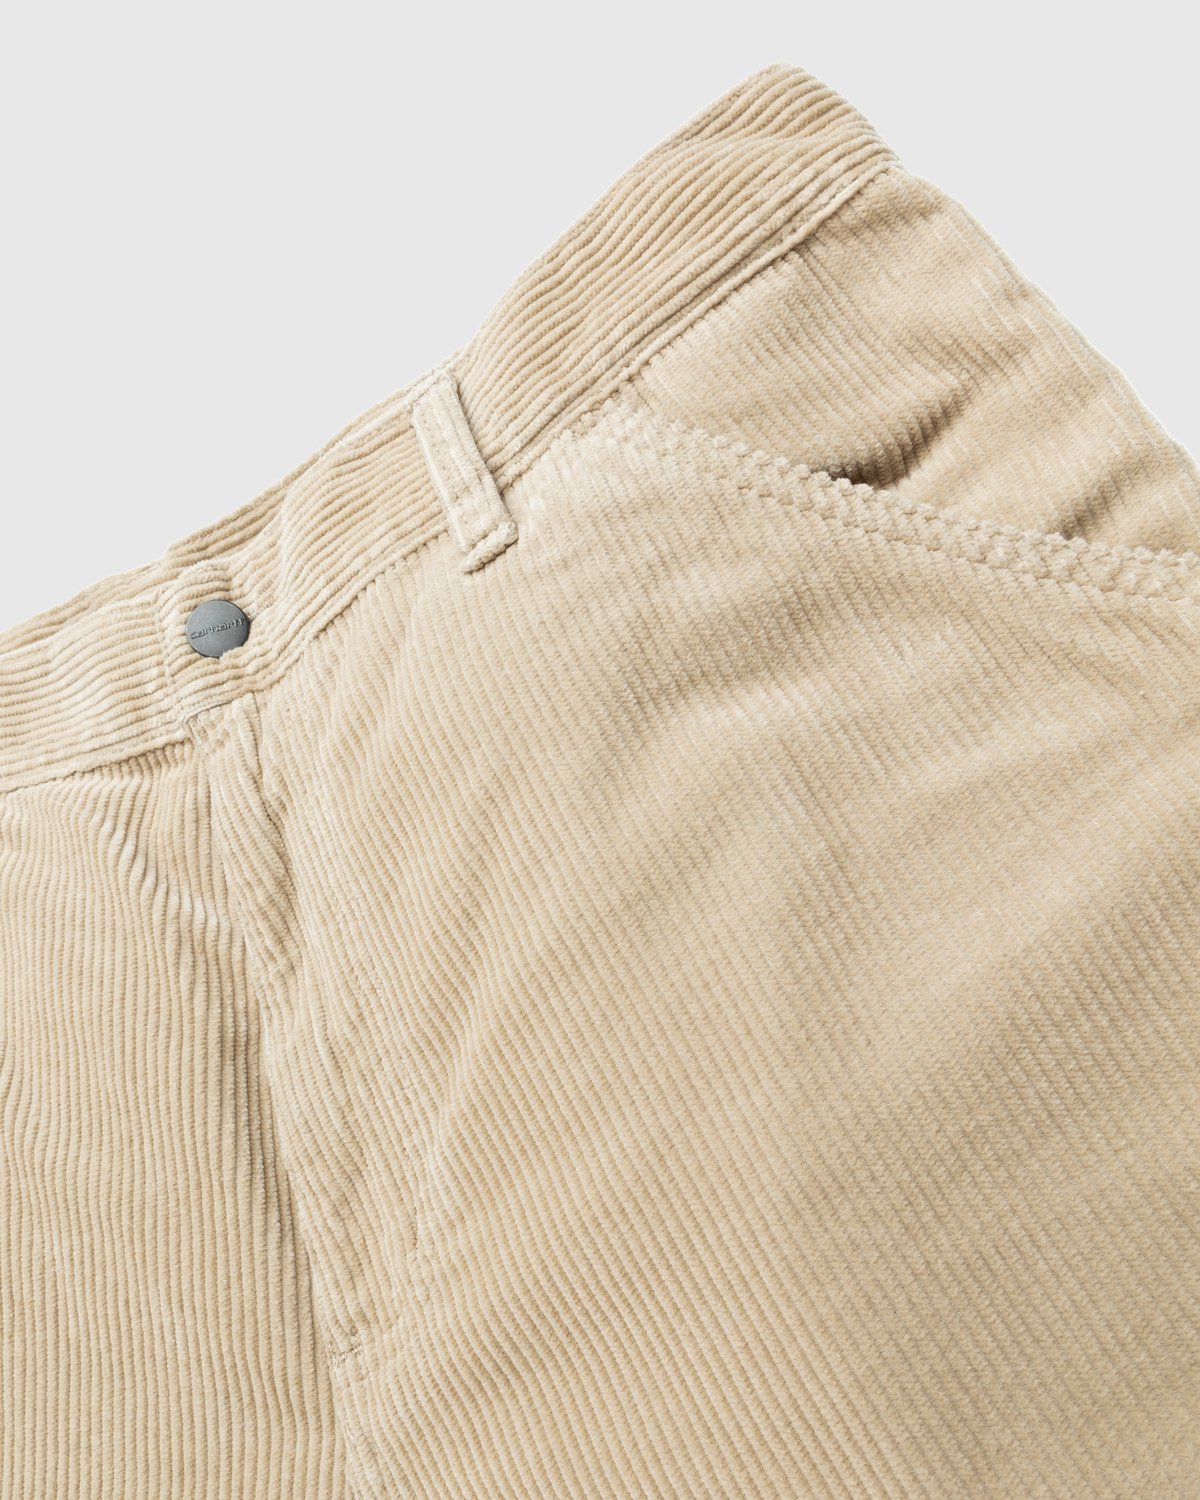 Carhartt WIP - Ruck Single Knee Pant Beige - Clothing - Brown - Image 5